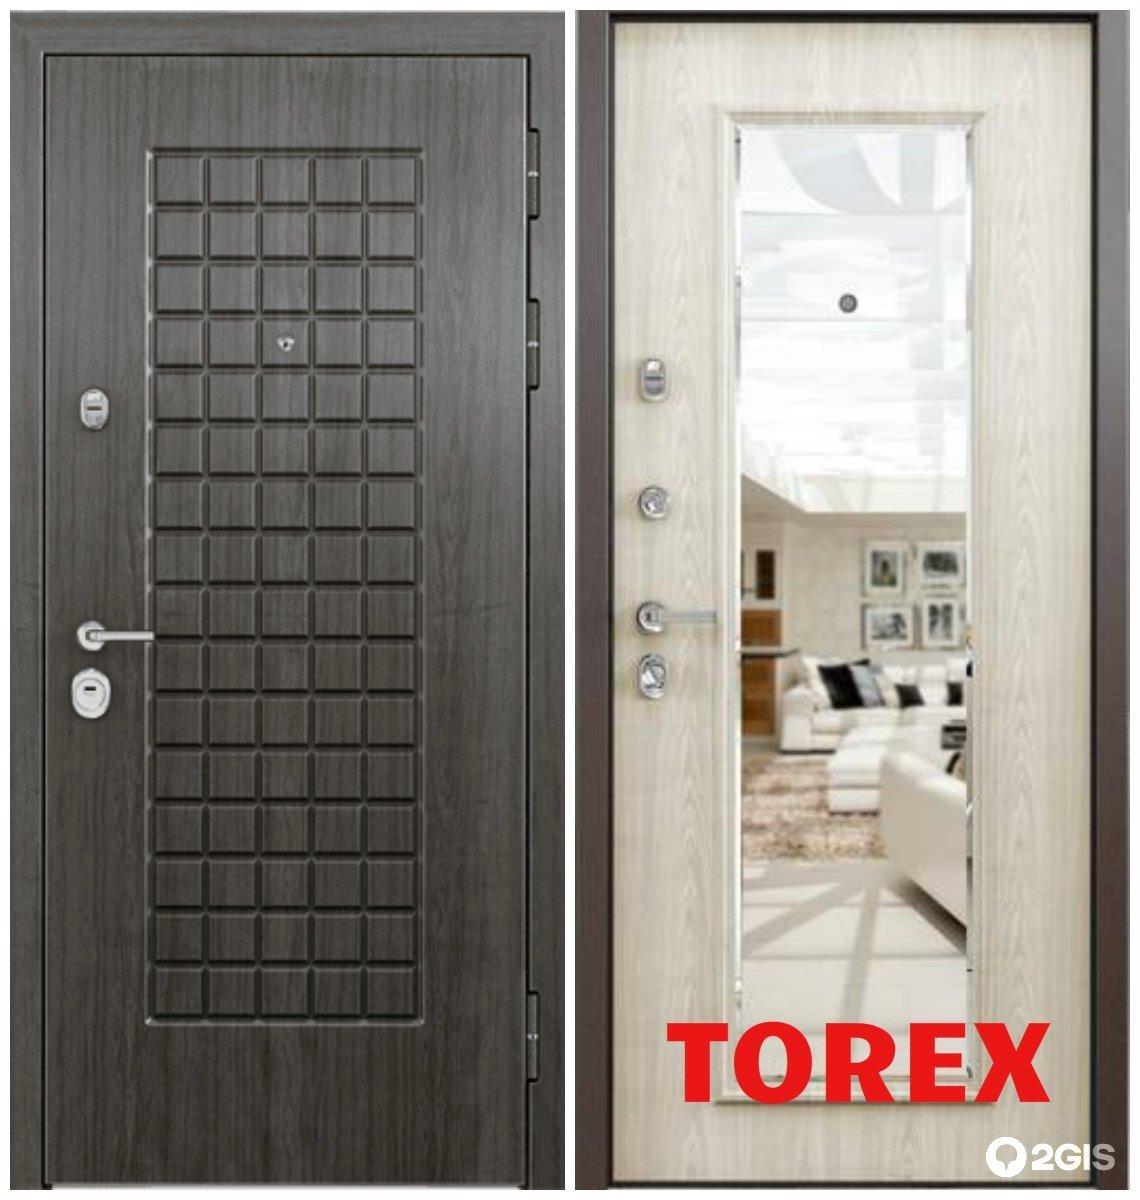 Двери входные металлические для квартиры торекс. Торекс входные двери. Входные двери Torex Ultimatum. Ультиматум ПП Торекс входная дверь. Двери Торекс 2010 год.